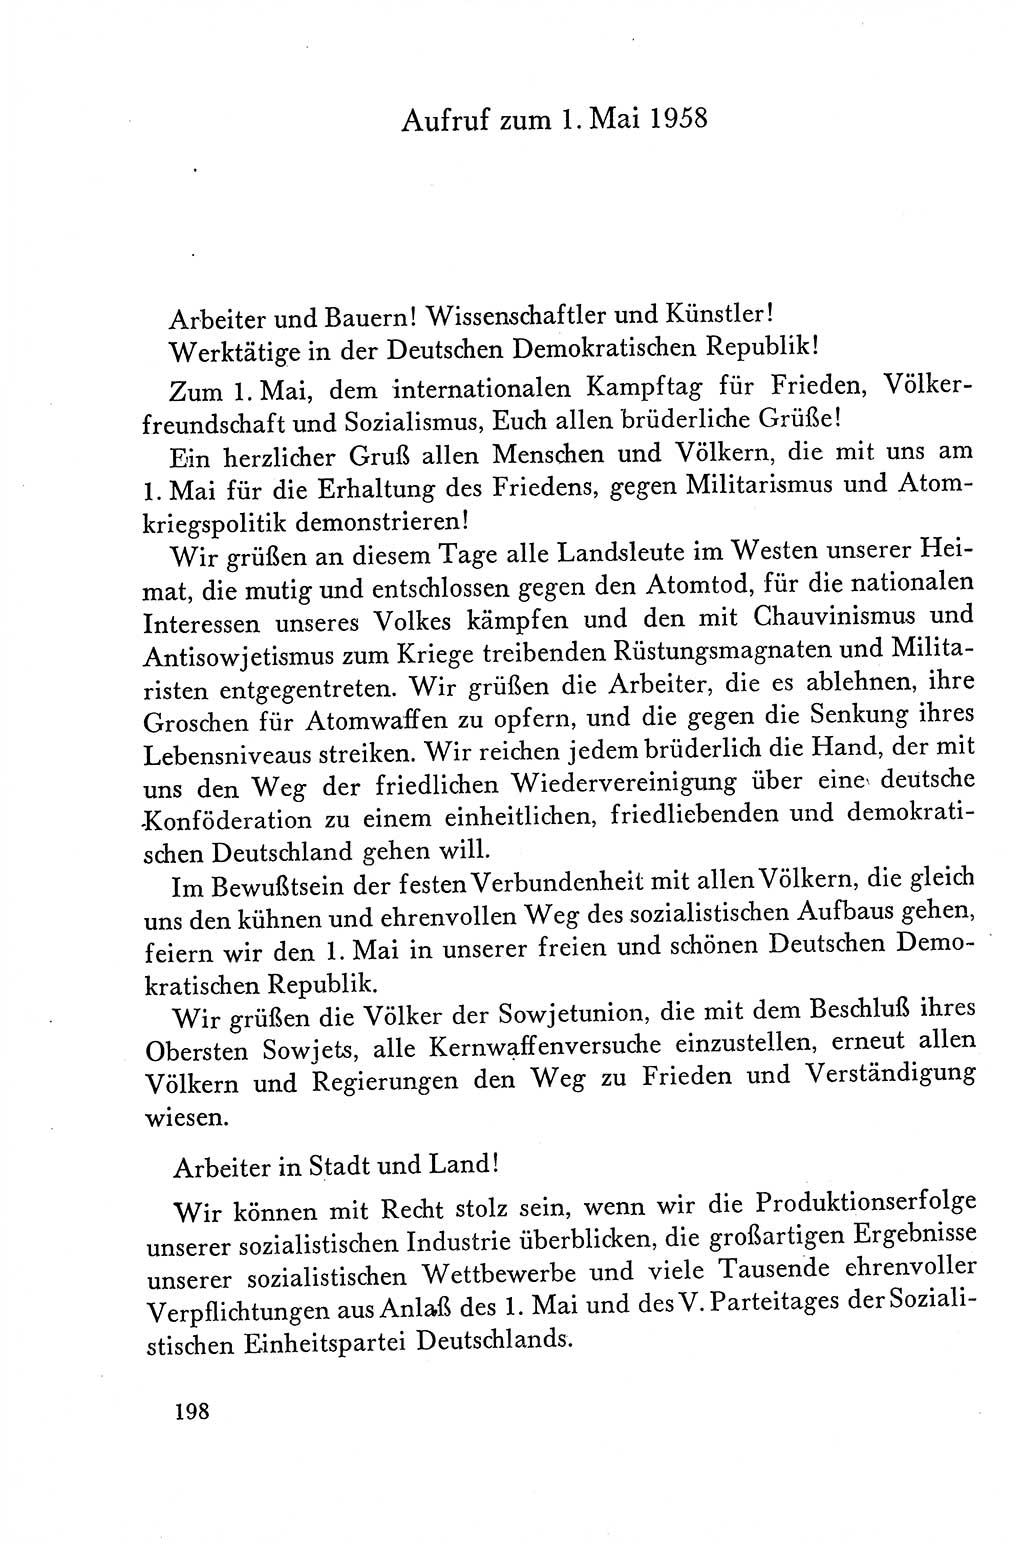 Dokumente der Sozialistischen Einheitspartei Deutschlands (SED) [Deutsche Demokratische Republik (DDR)] 1958-1959, Seite 198 (Dok. SED DDR 1958-1959, S. 198)